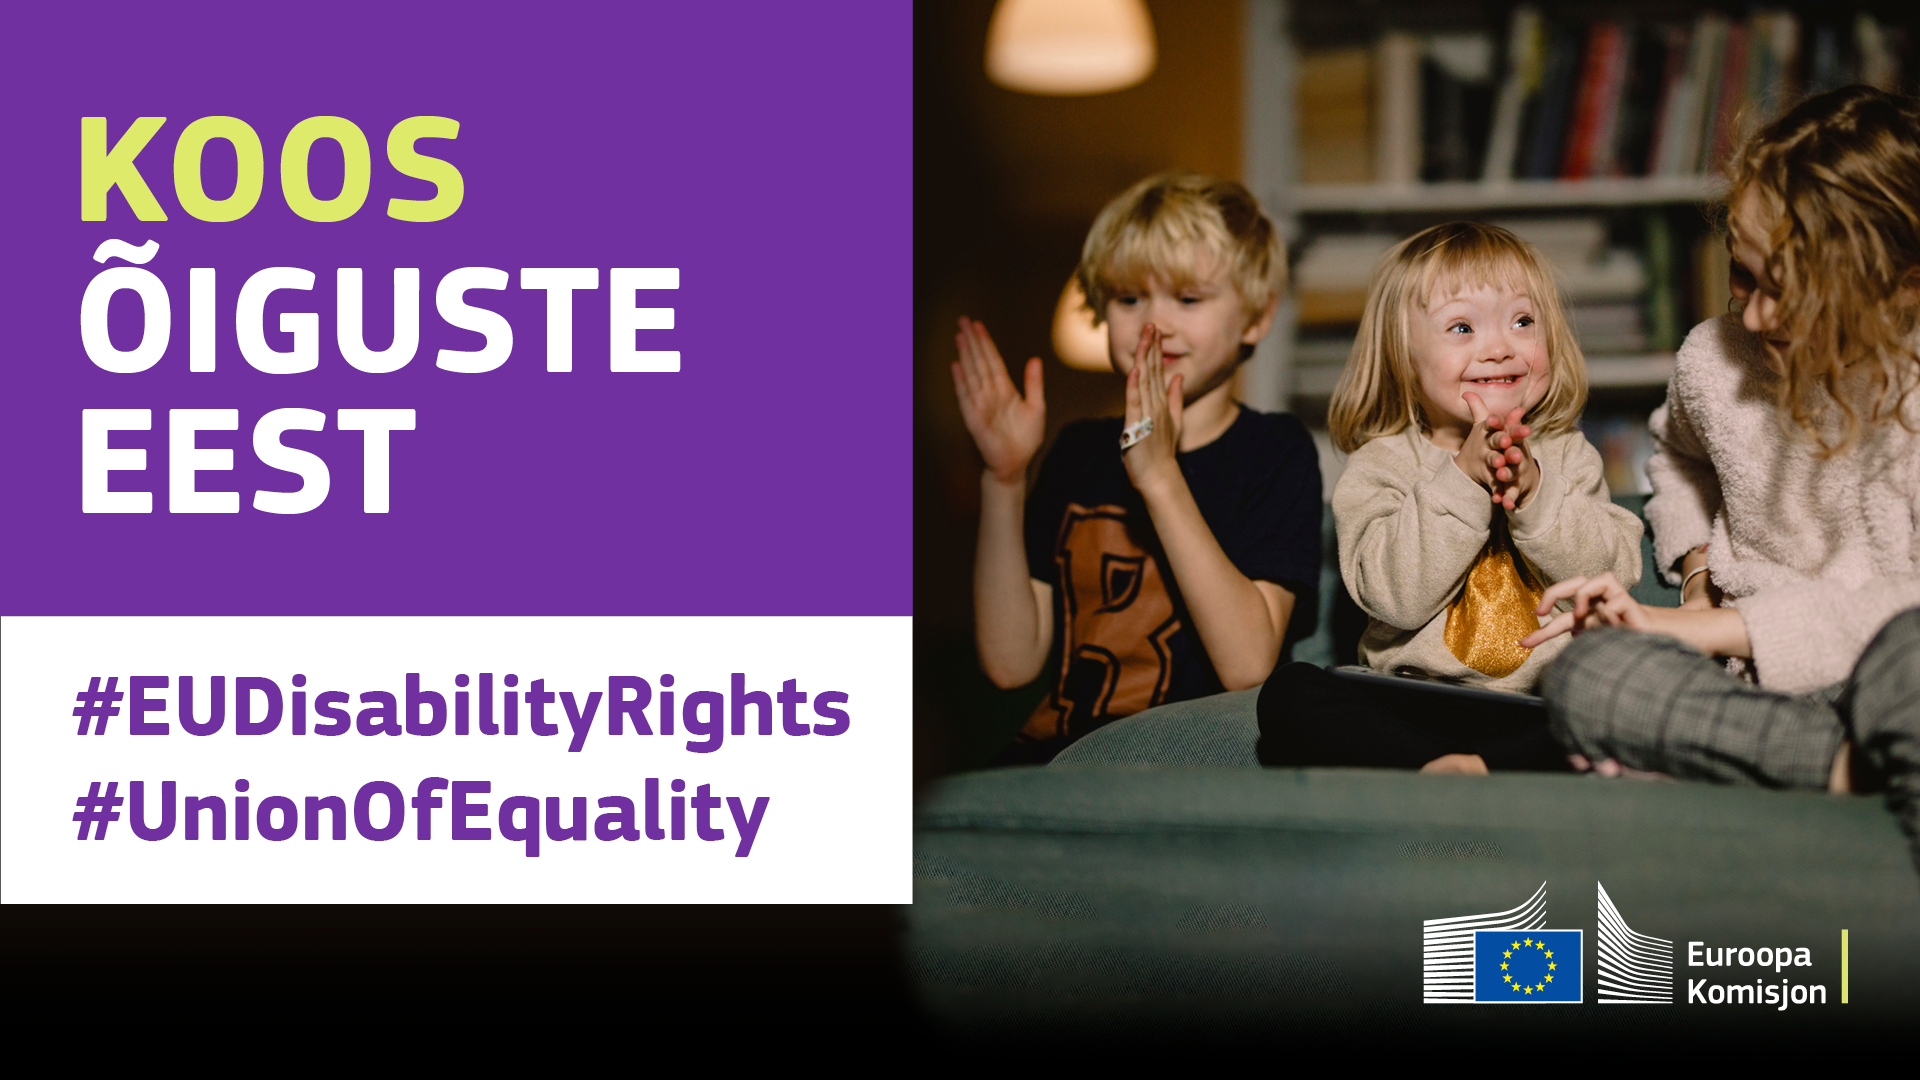 Kolm last rõõmsalt koos mängimas. Ühel on Downi sündroom. Tekst: Koos õiguste eest, #EUDisabilityRights, #UnionOfEquality.